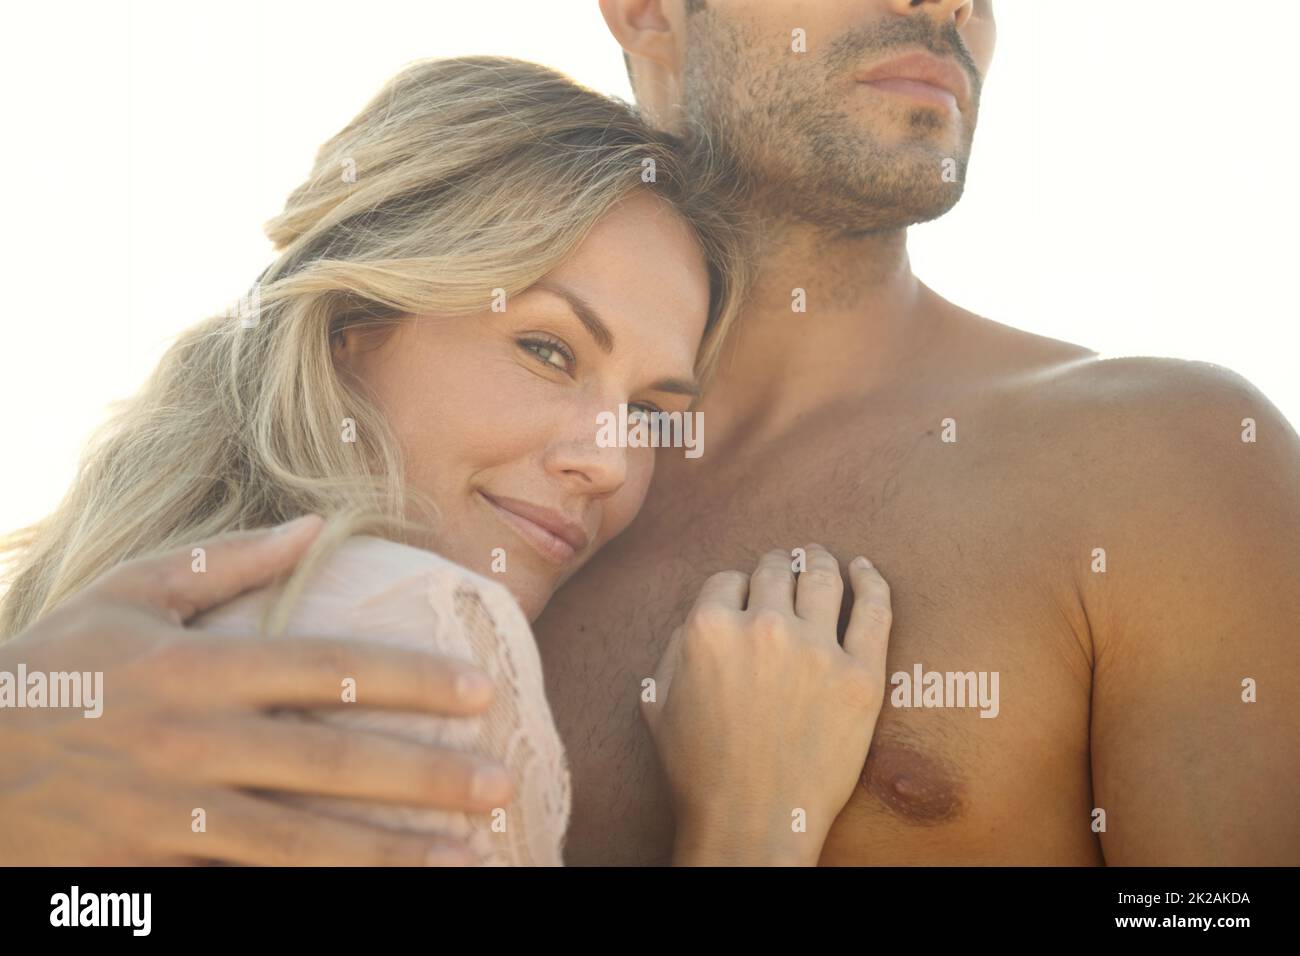 Seguro en sus brazos. Retrato de cabeza y hombros de una joven atractiva abrazando a su marido en un día soleado. Foto de stock